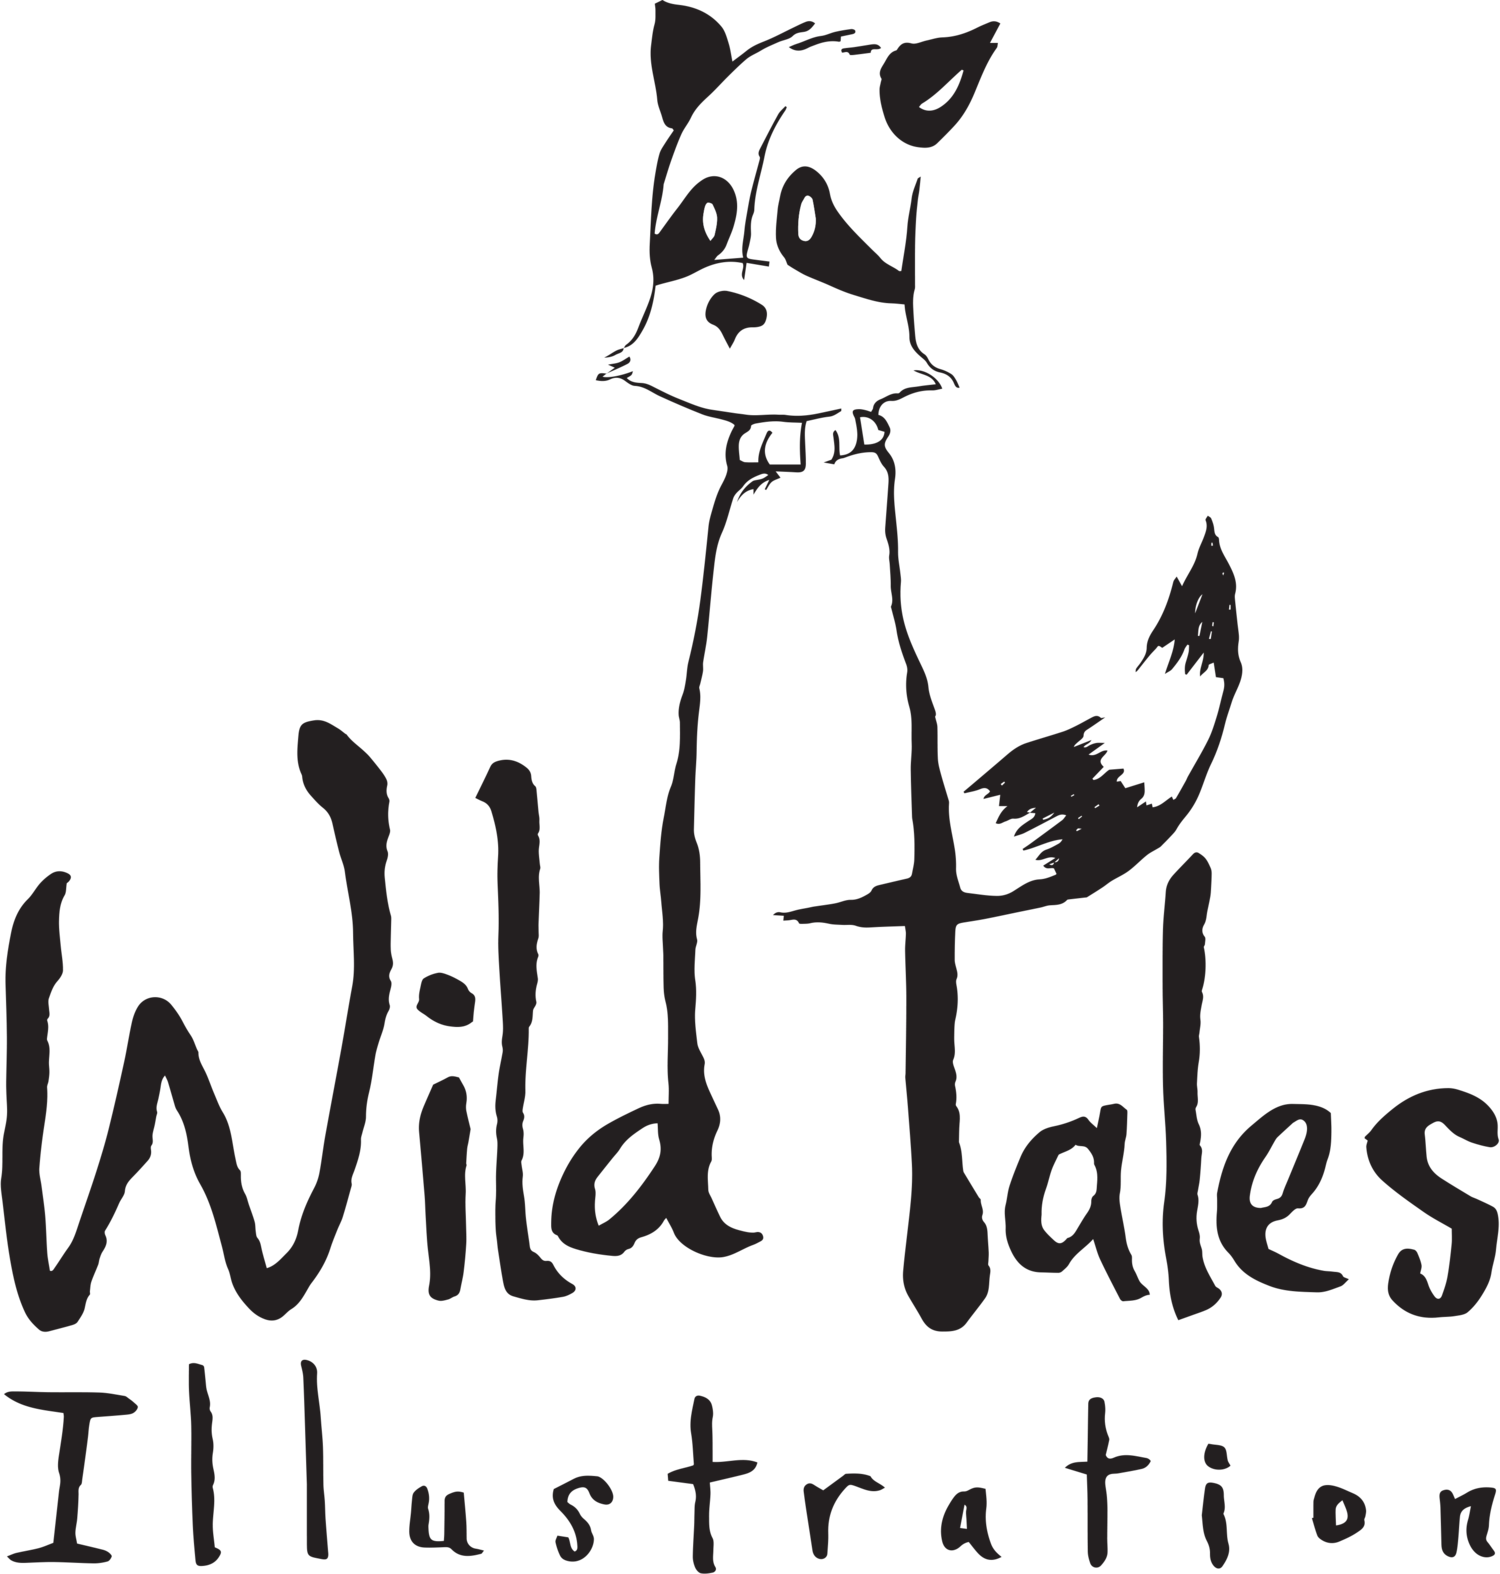 Wild Tales Illustration